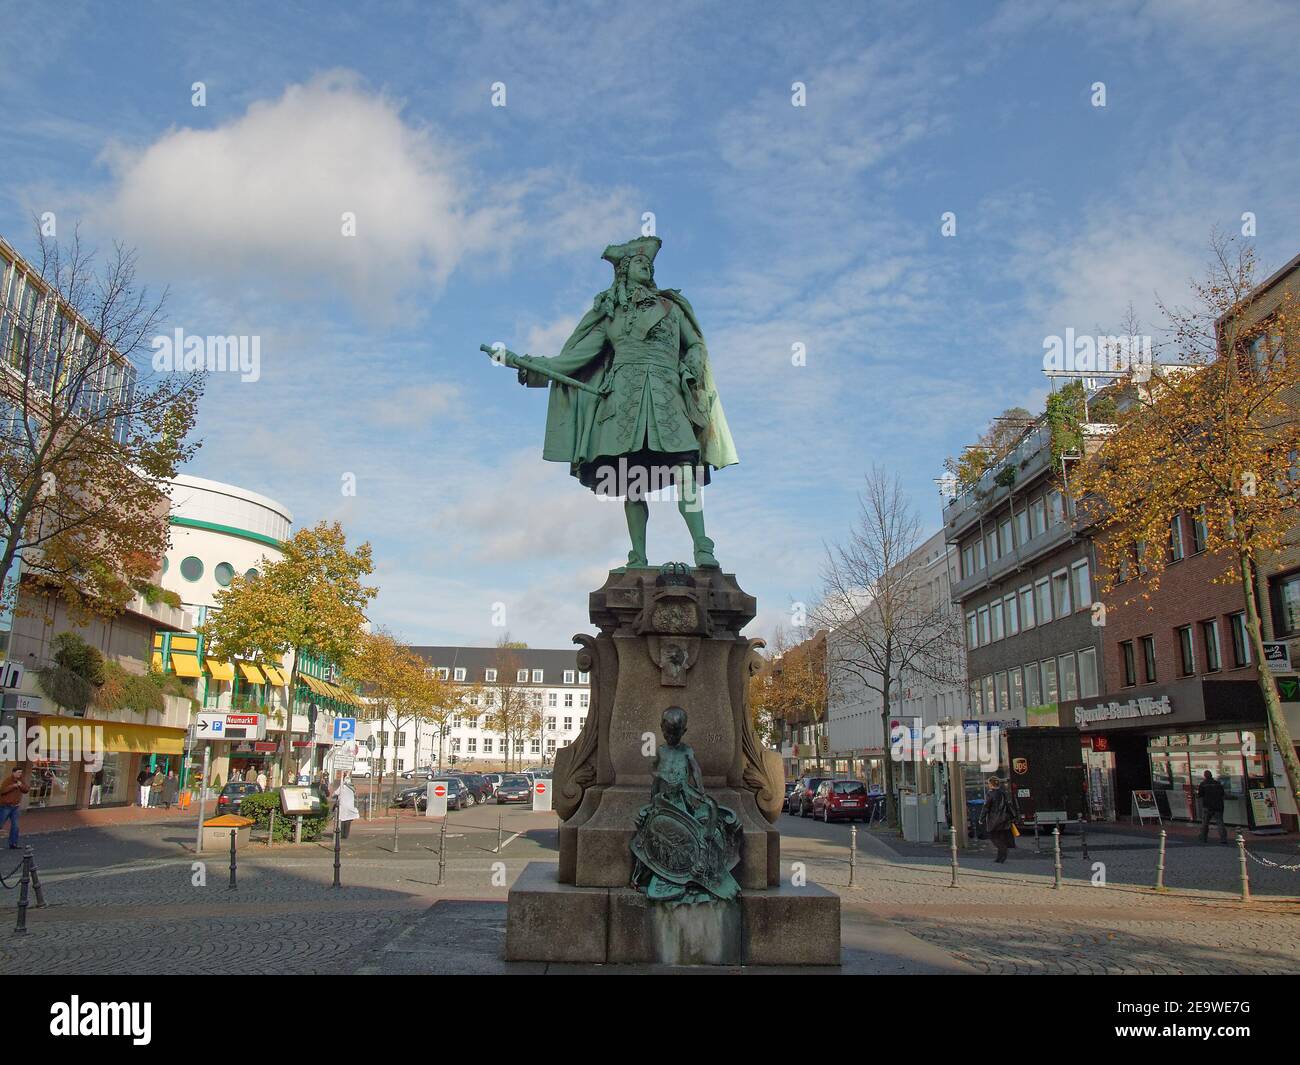 Statue of King Friedrich I. on Neumarkt in Moers, Nordrhein-Westfalen, Germany. Stock Photo